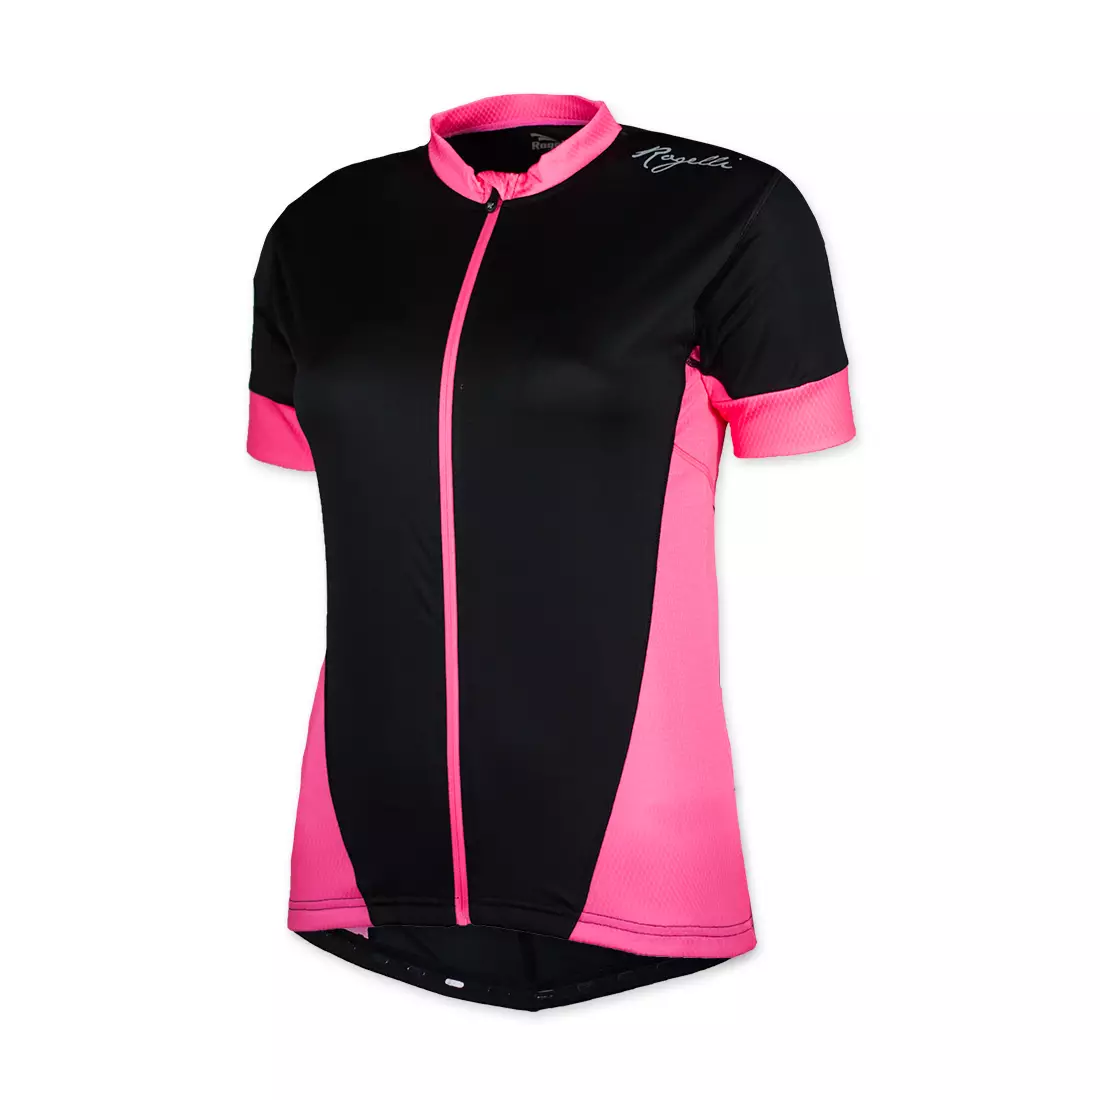 ROGELLI BIKE 010-025 CAPRICE - dámský cyklistický dres, černo-růžový